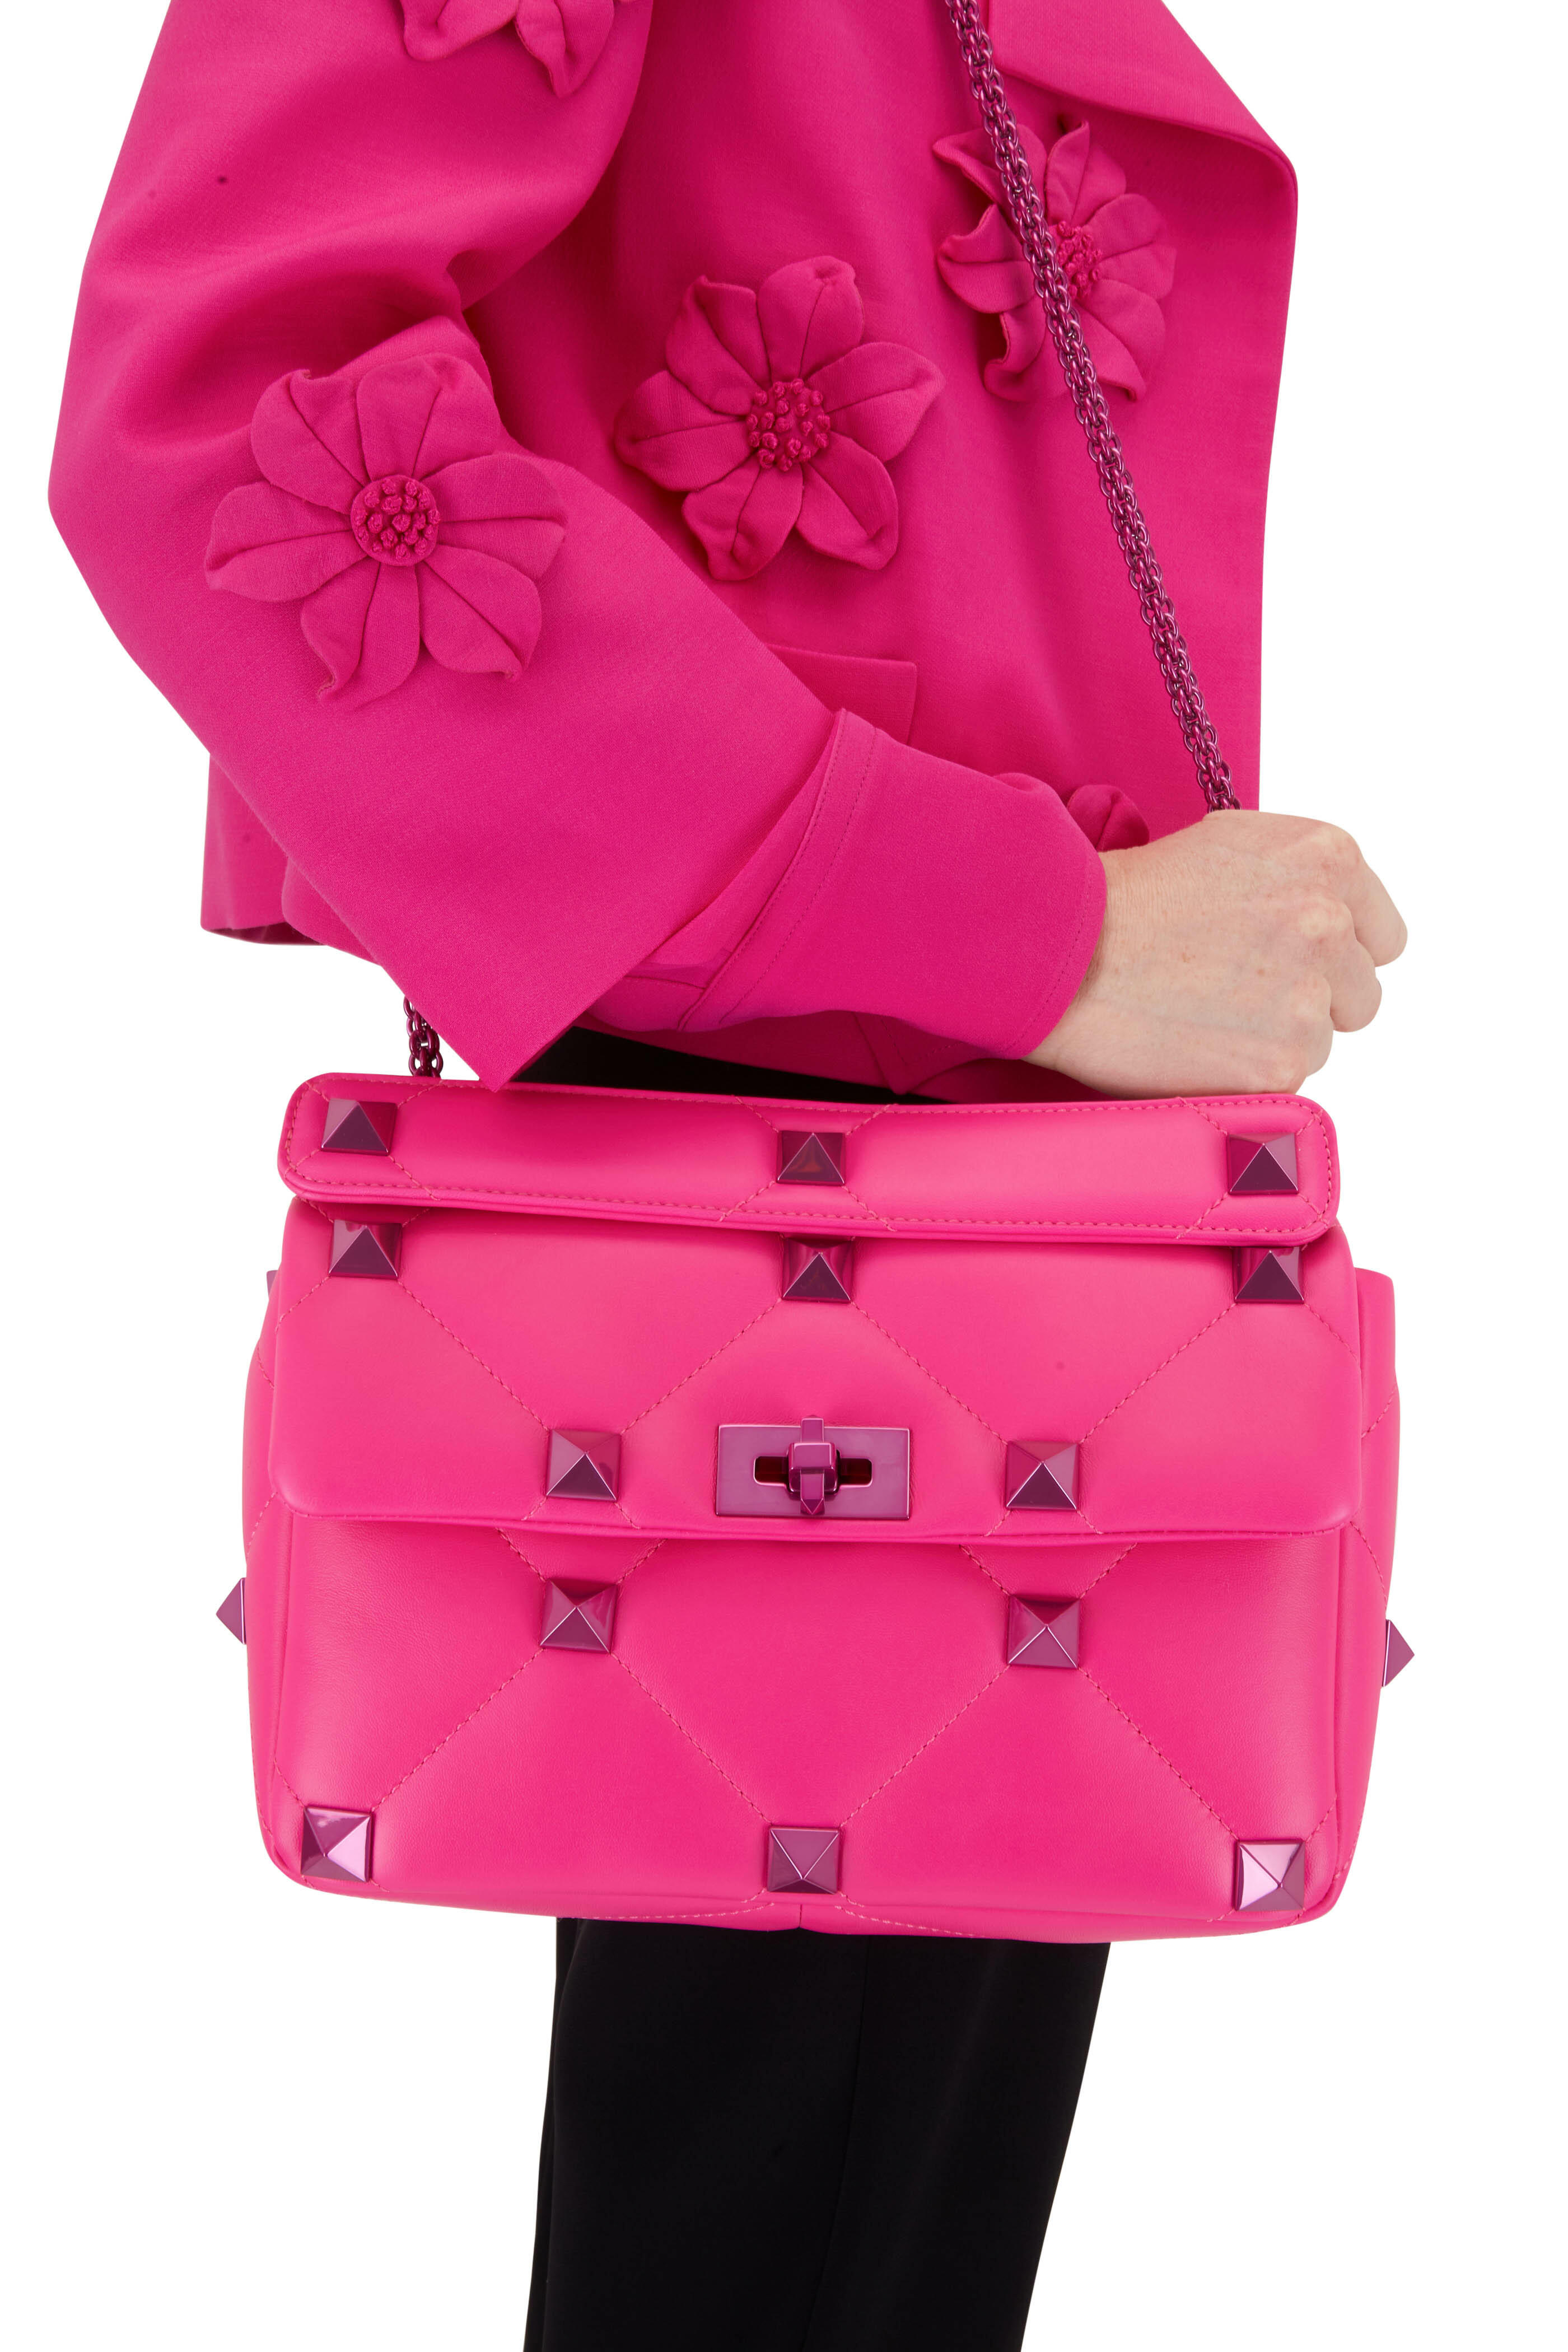 Valentino Garavani Roman Stud crystal-embellished shoulder bag - Pink